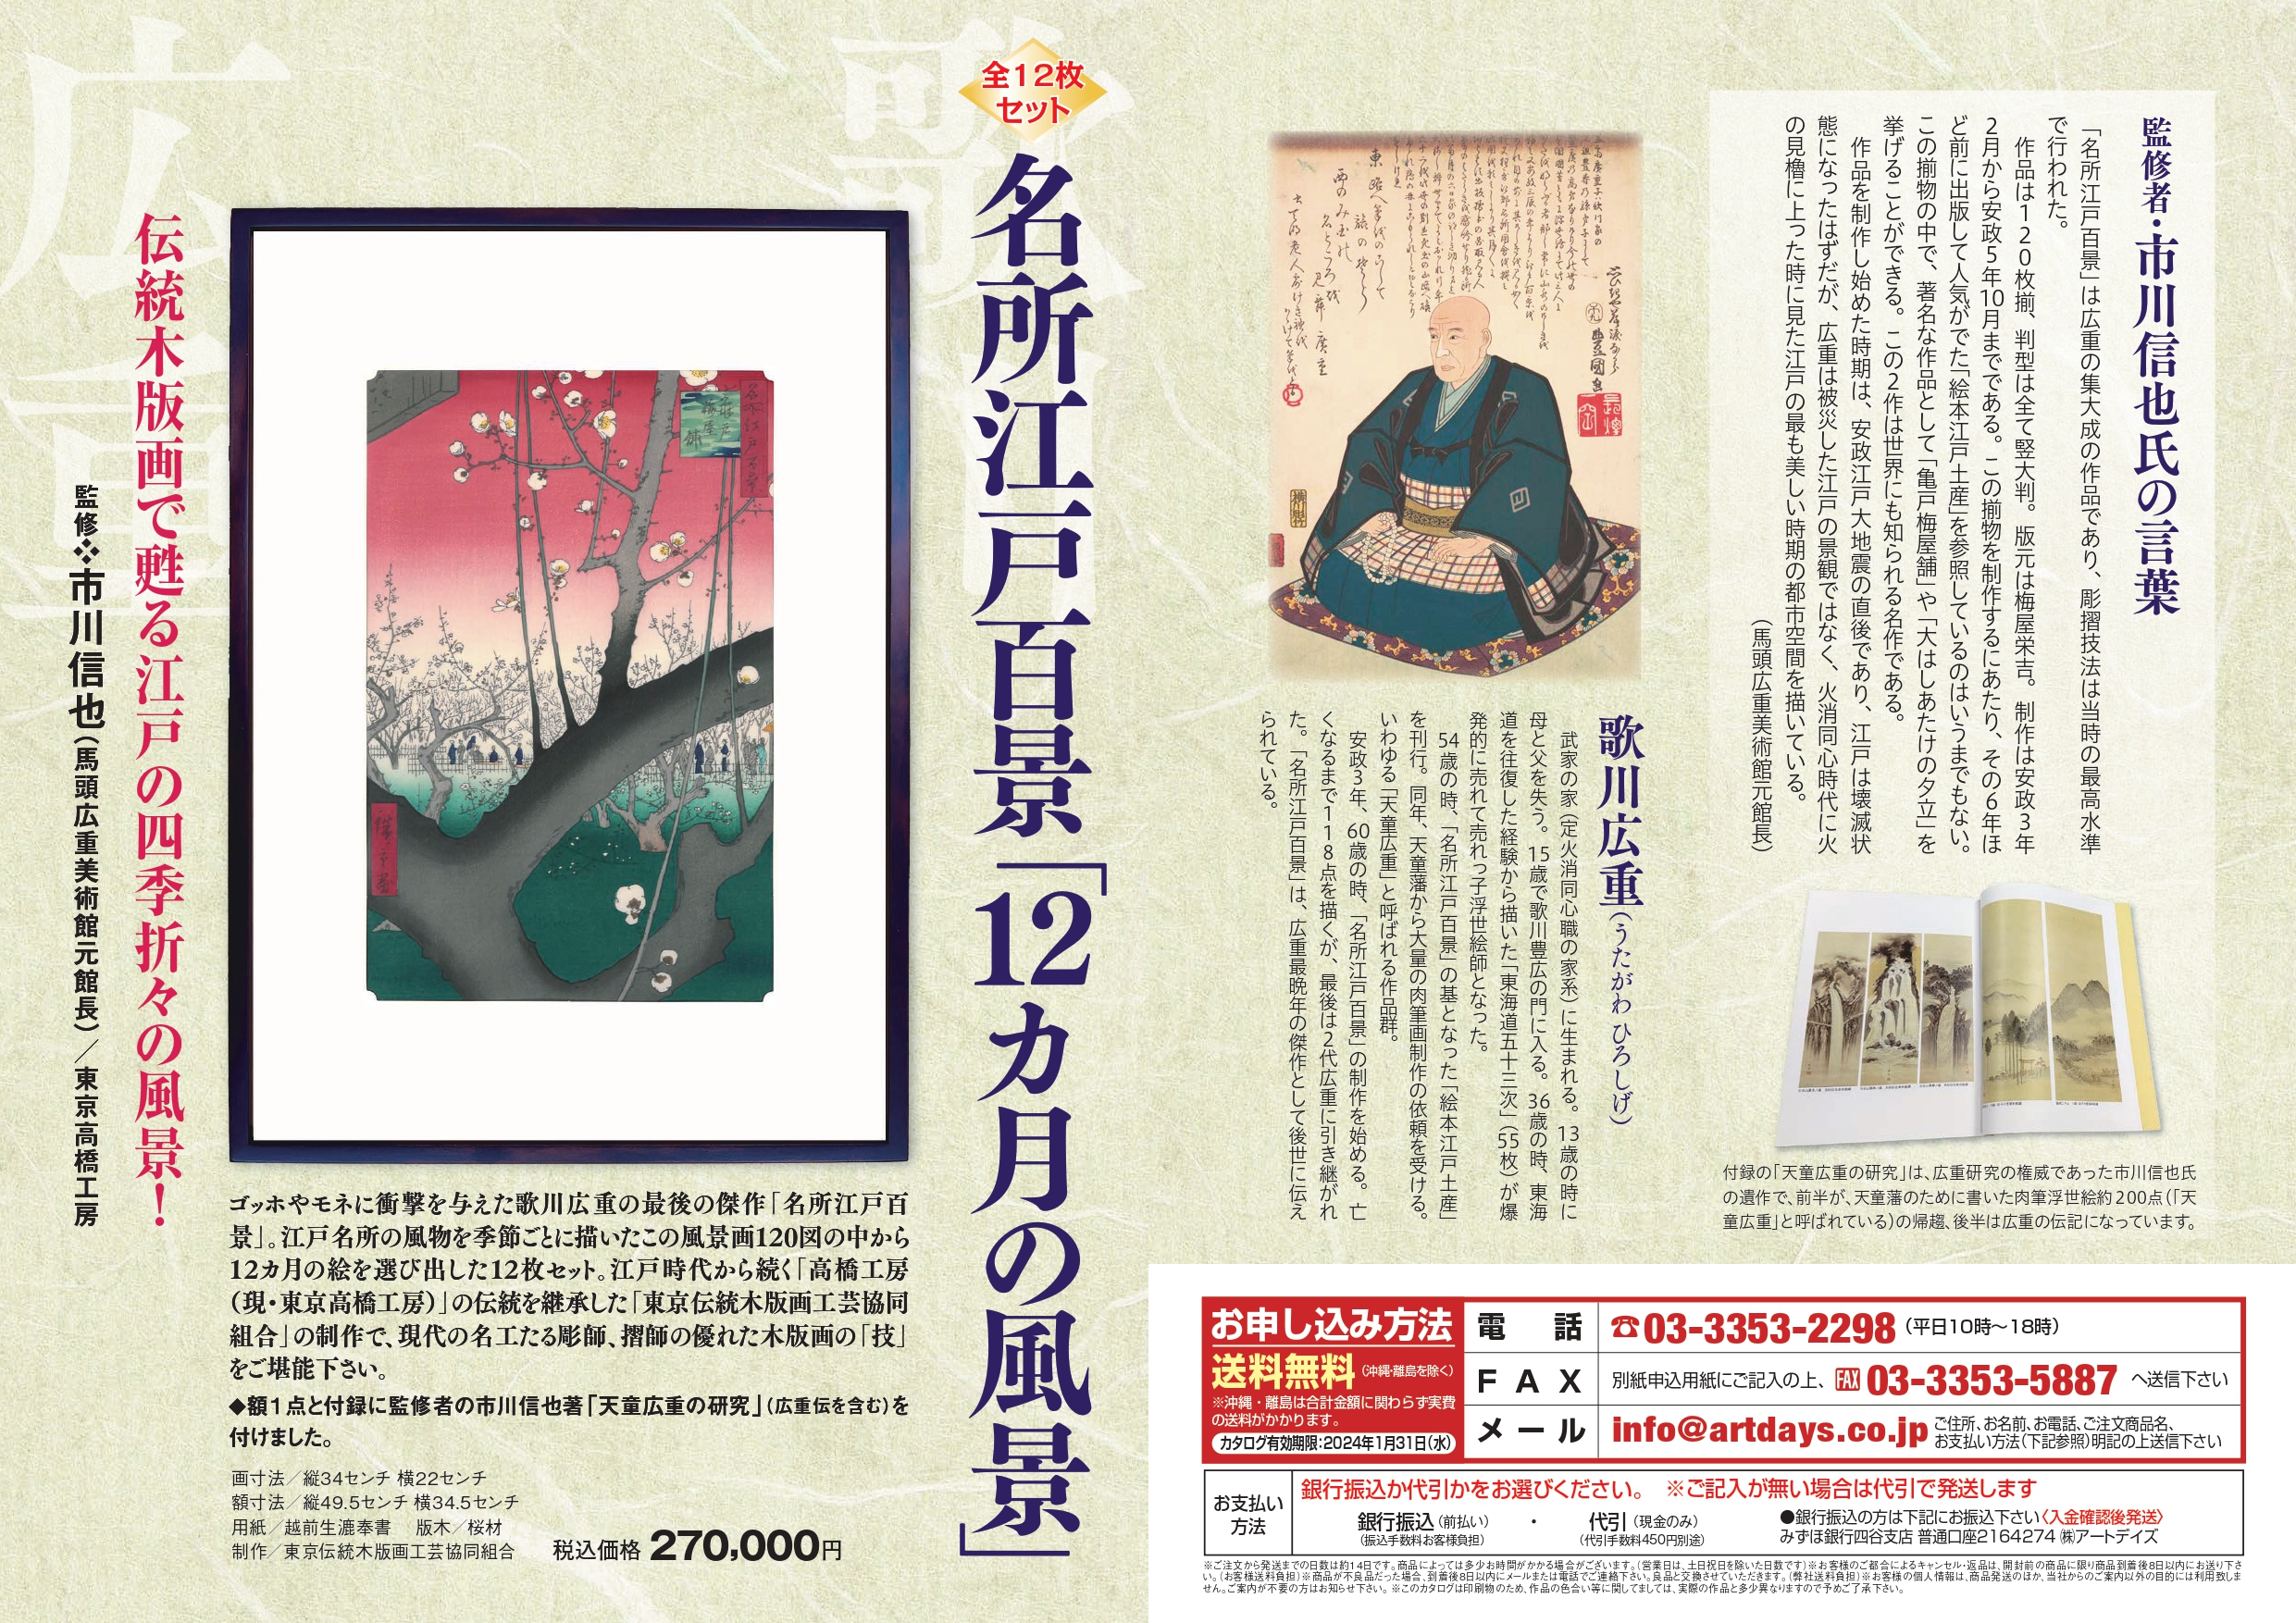 2月20日、当社の新商品「名所江戸百景『12カ月の風景』」の広告を日本経済新聞に掲載しました。(パンフレットをご請求ください)